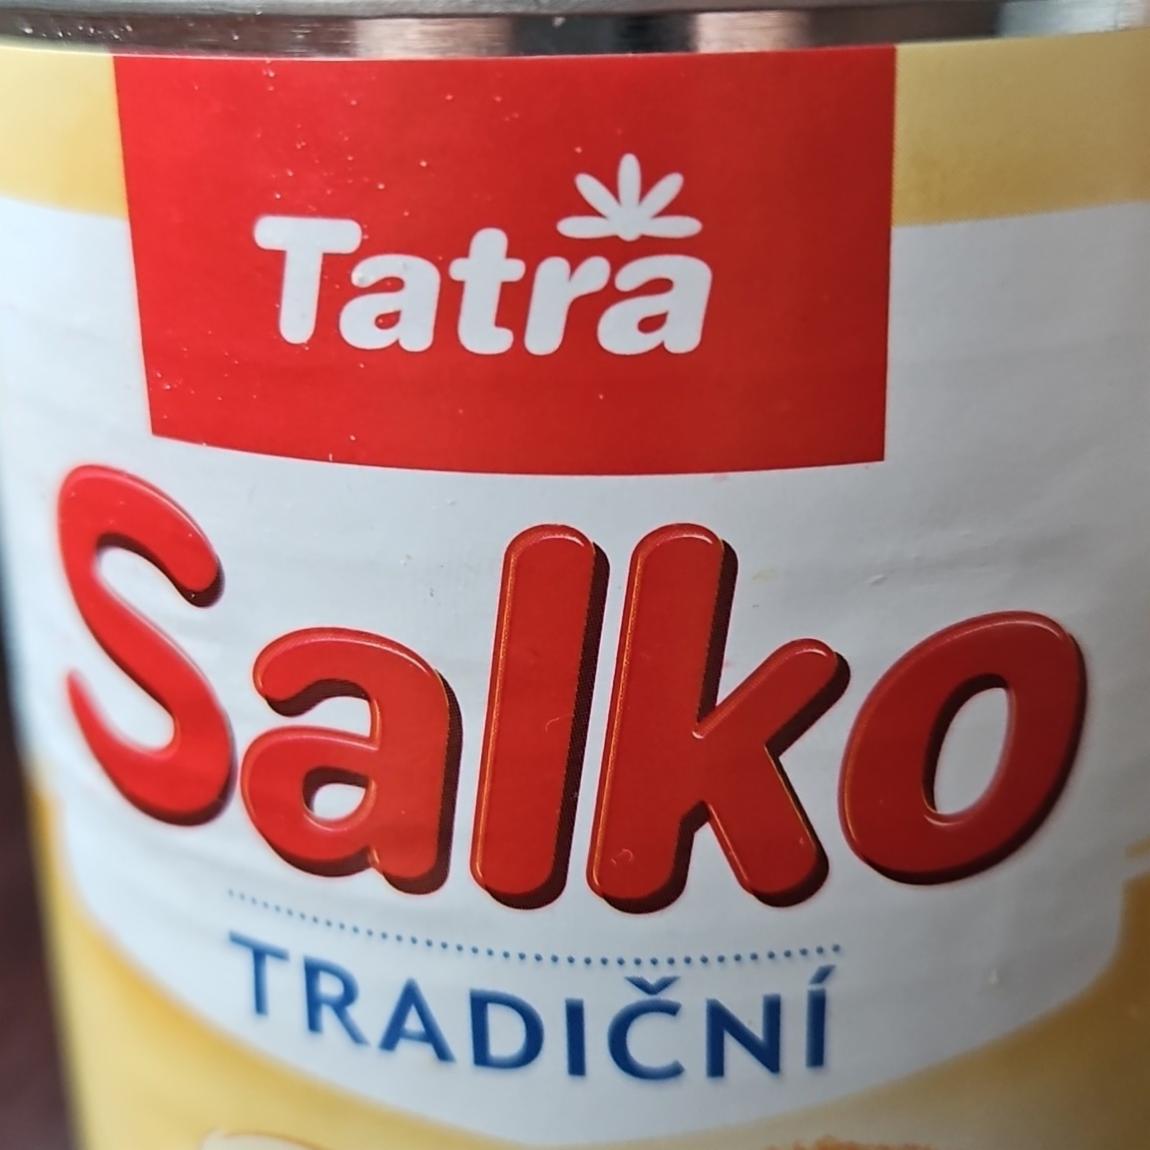 Фото - Salko tradiční Tatra